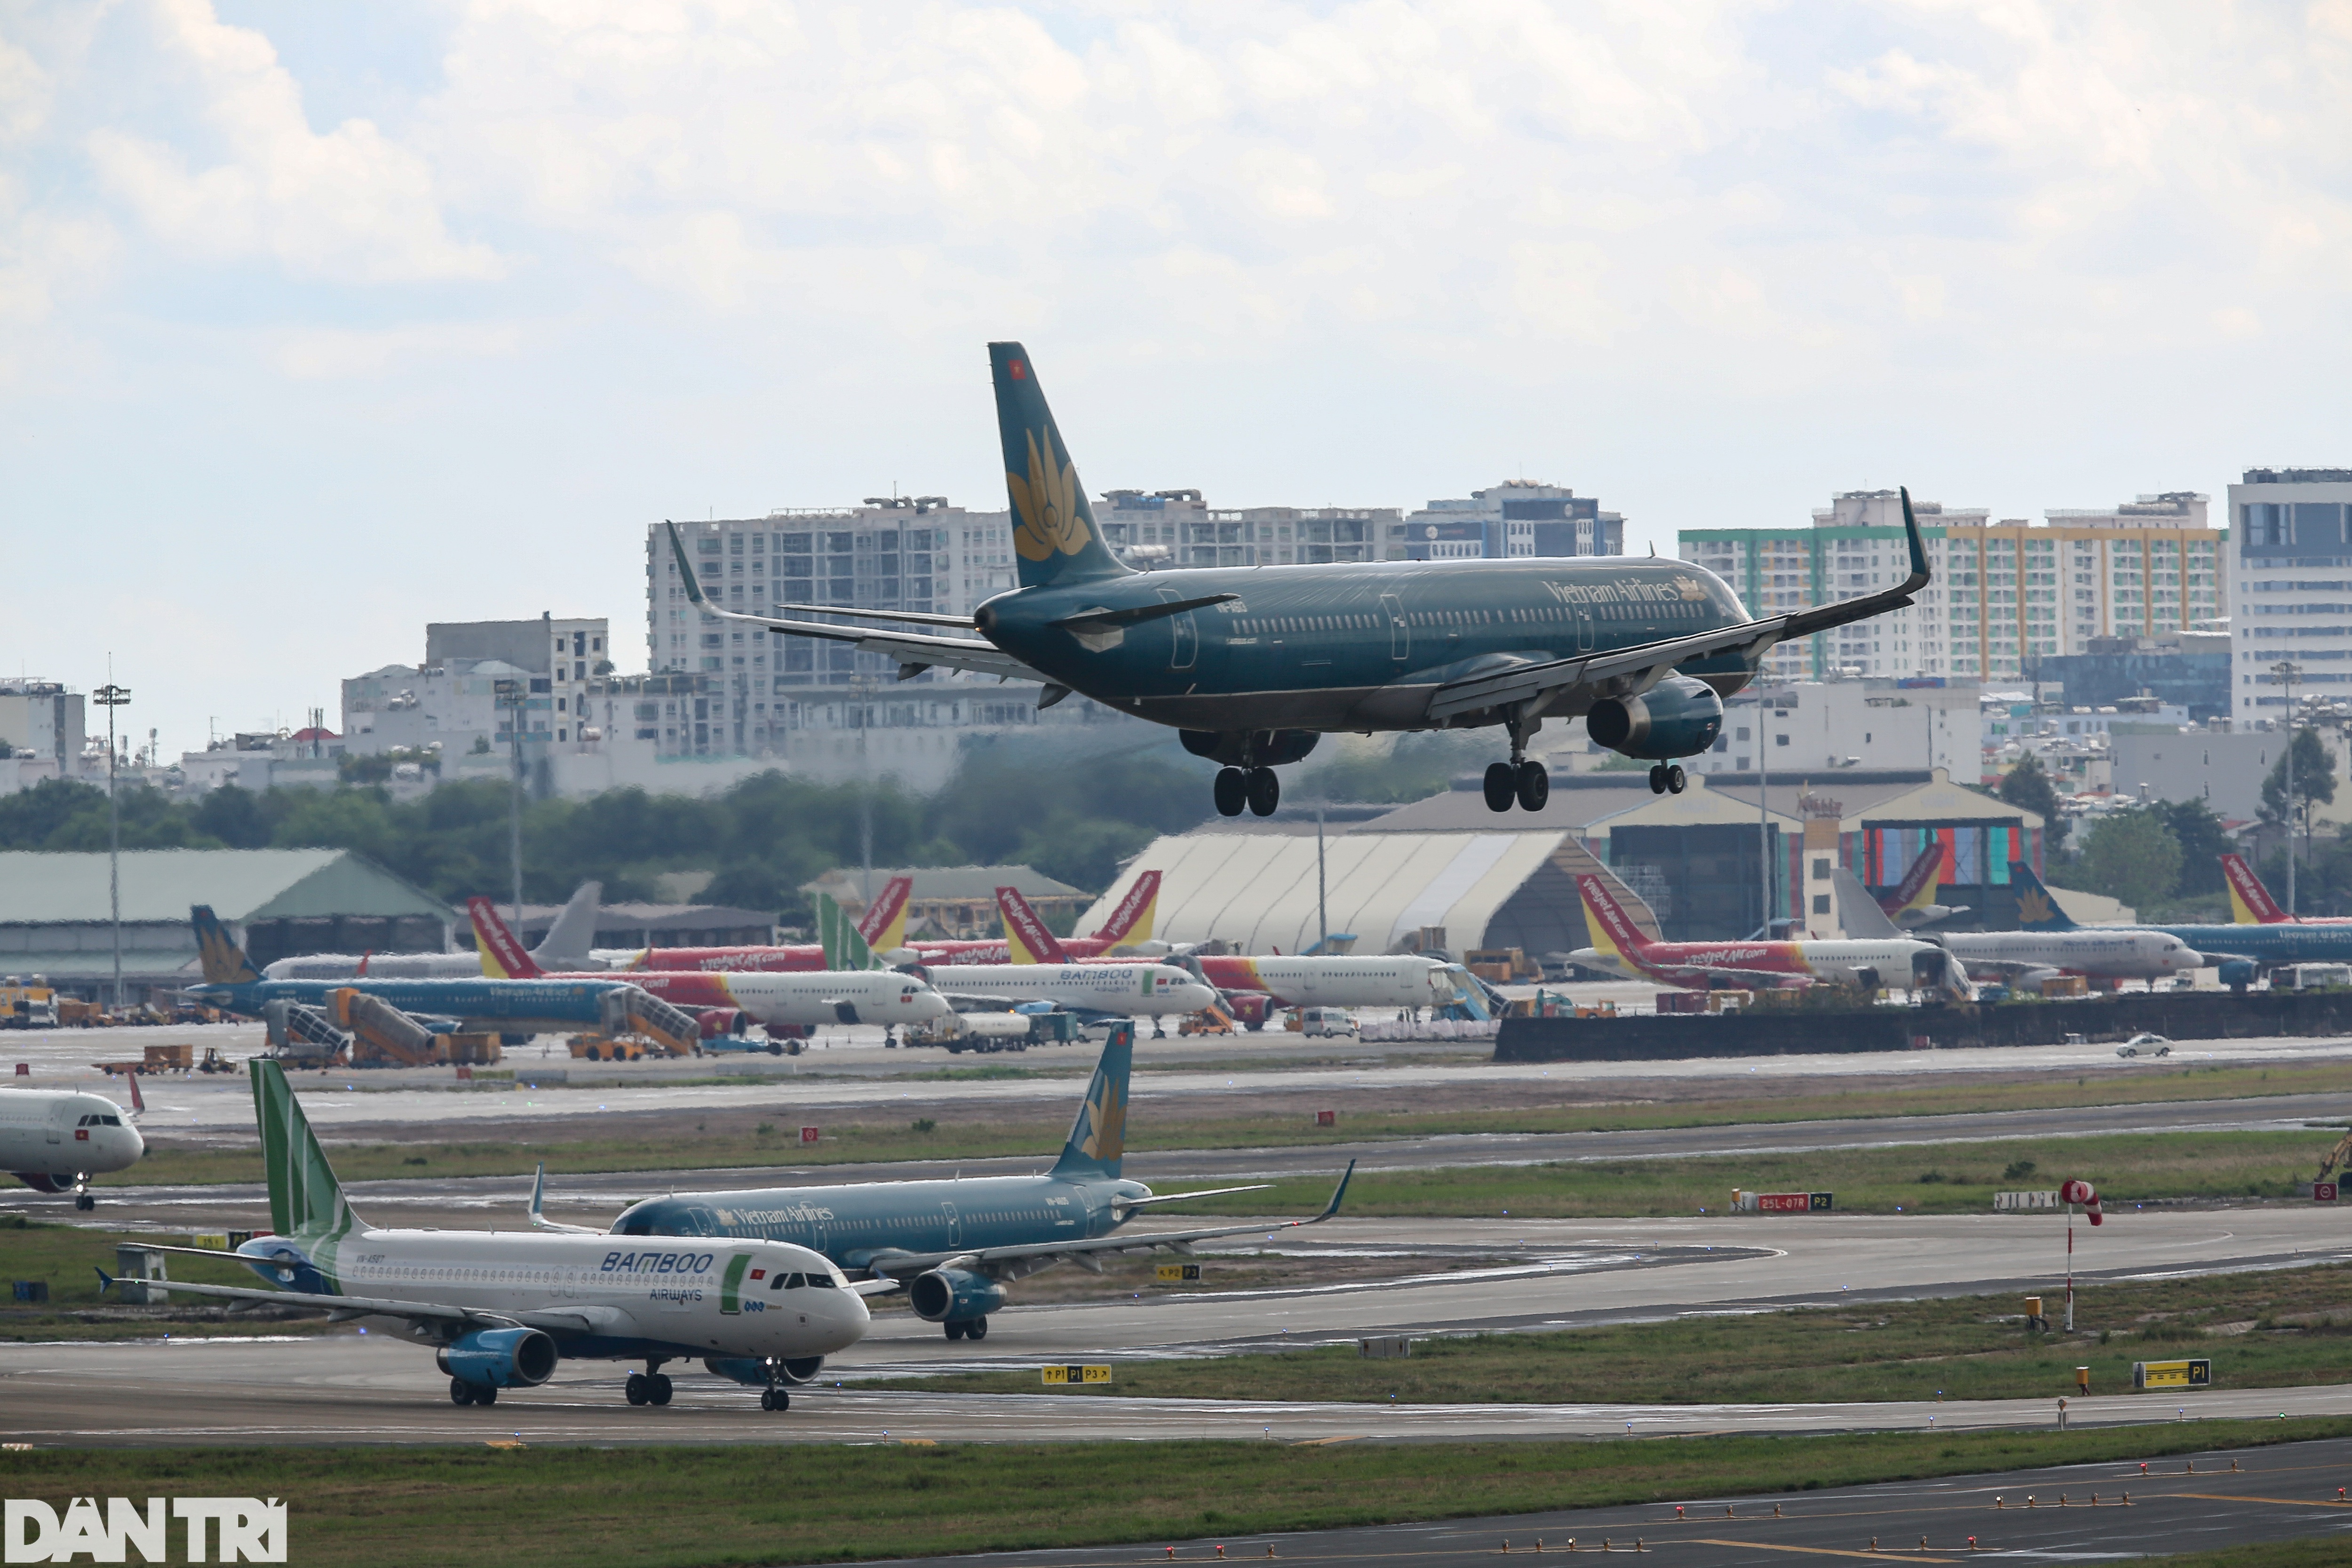 Chuyên gia quốc tế góp ý vấn đề an toàn hàng không cho sân bay Tân Sơn Nhất - 2